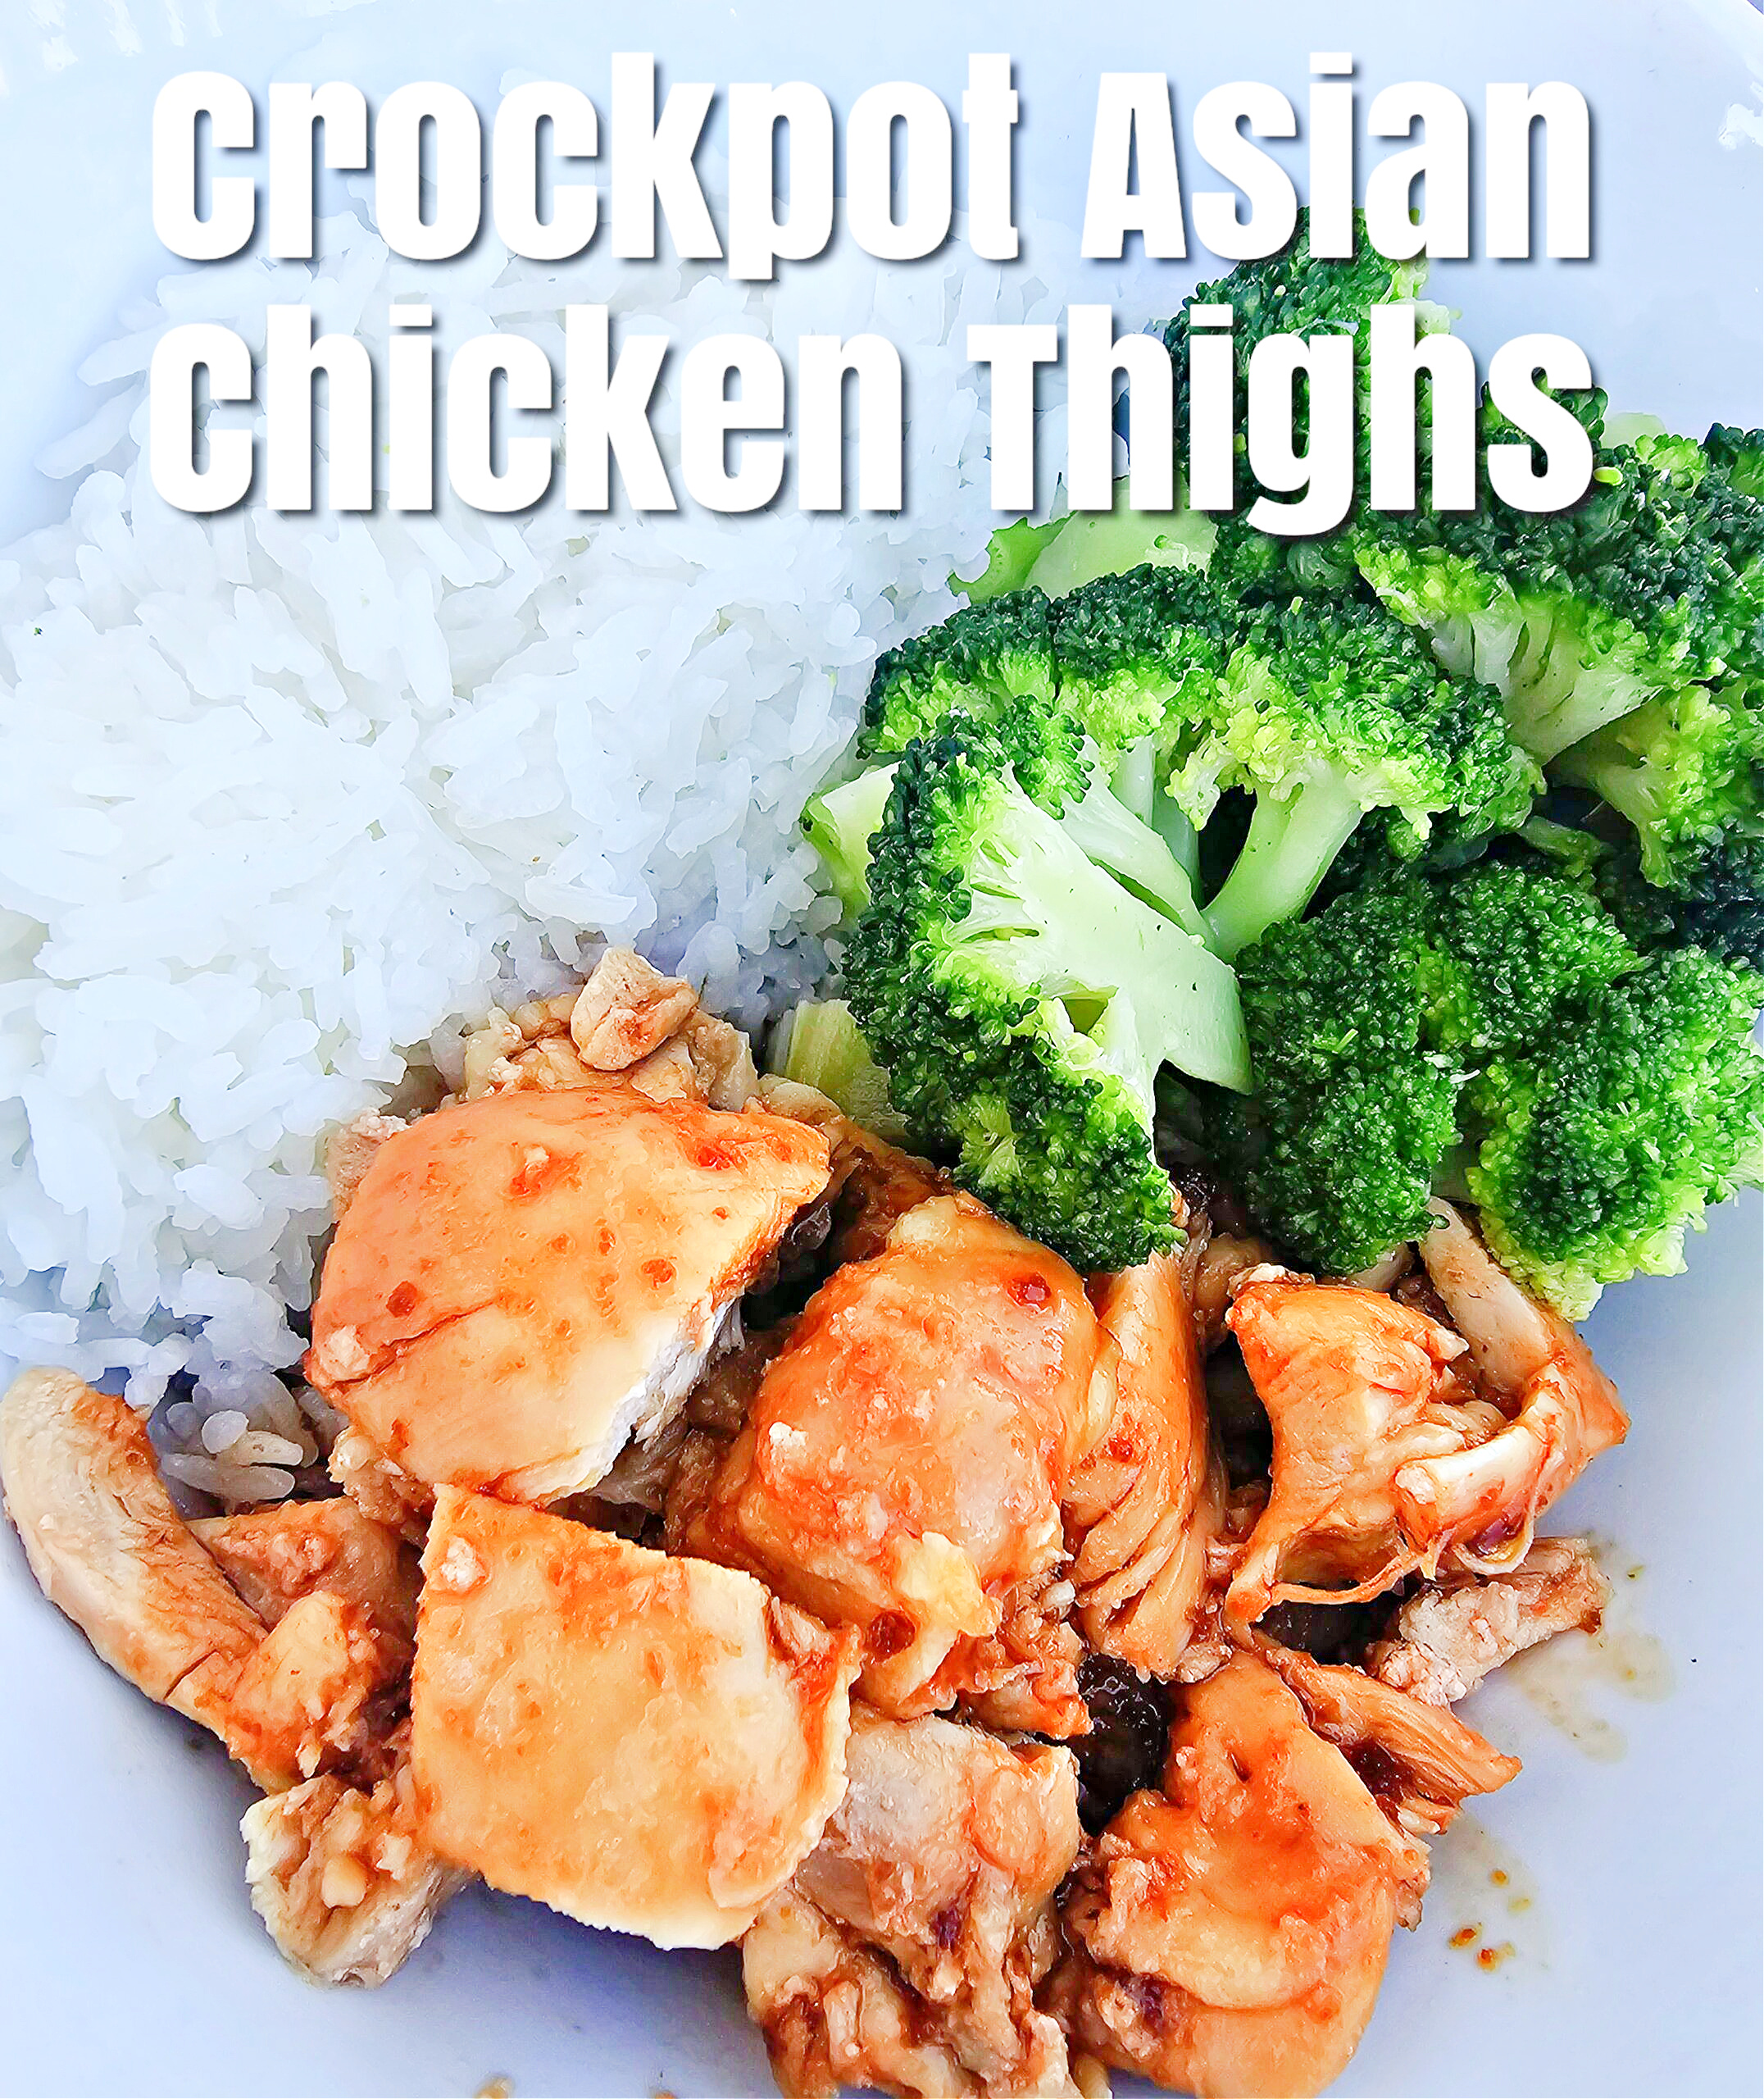 Crockpot Asian Chicken Thighs #crockpot #chickenthighs #asian #onepanmeal #dinner #family dinner